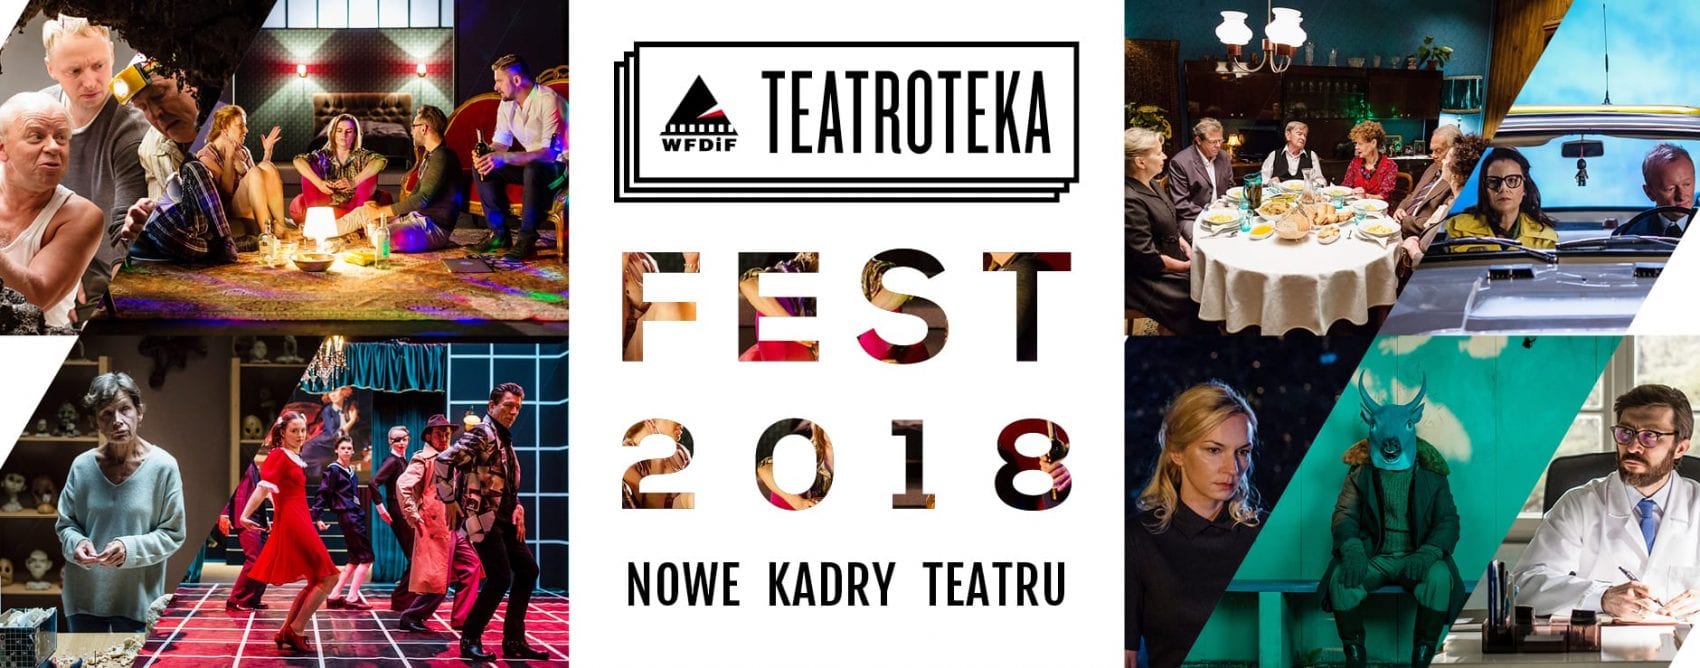 TEATROTEKA FEST 2018 | 9 – 11 LUTEGO 2018 (informacja prasowa)